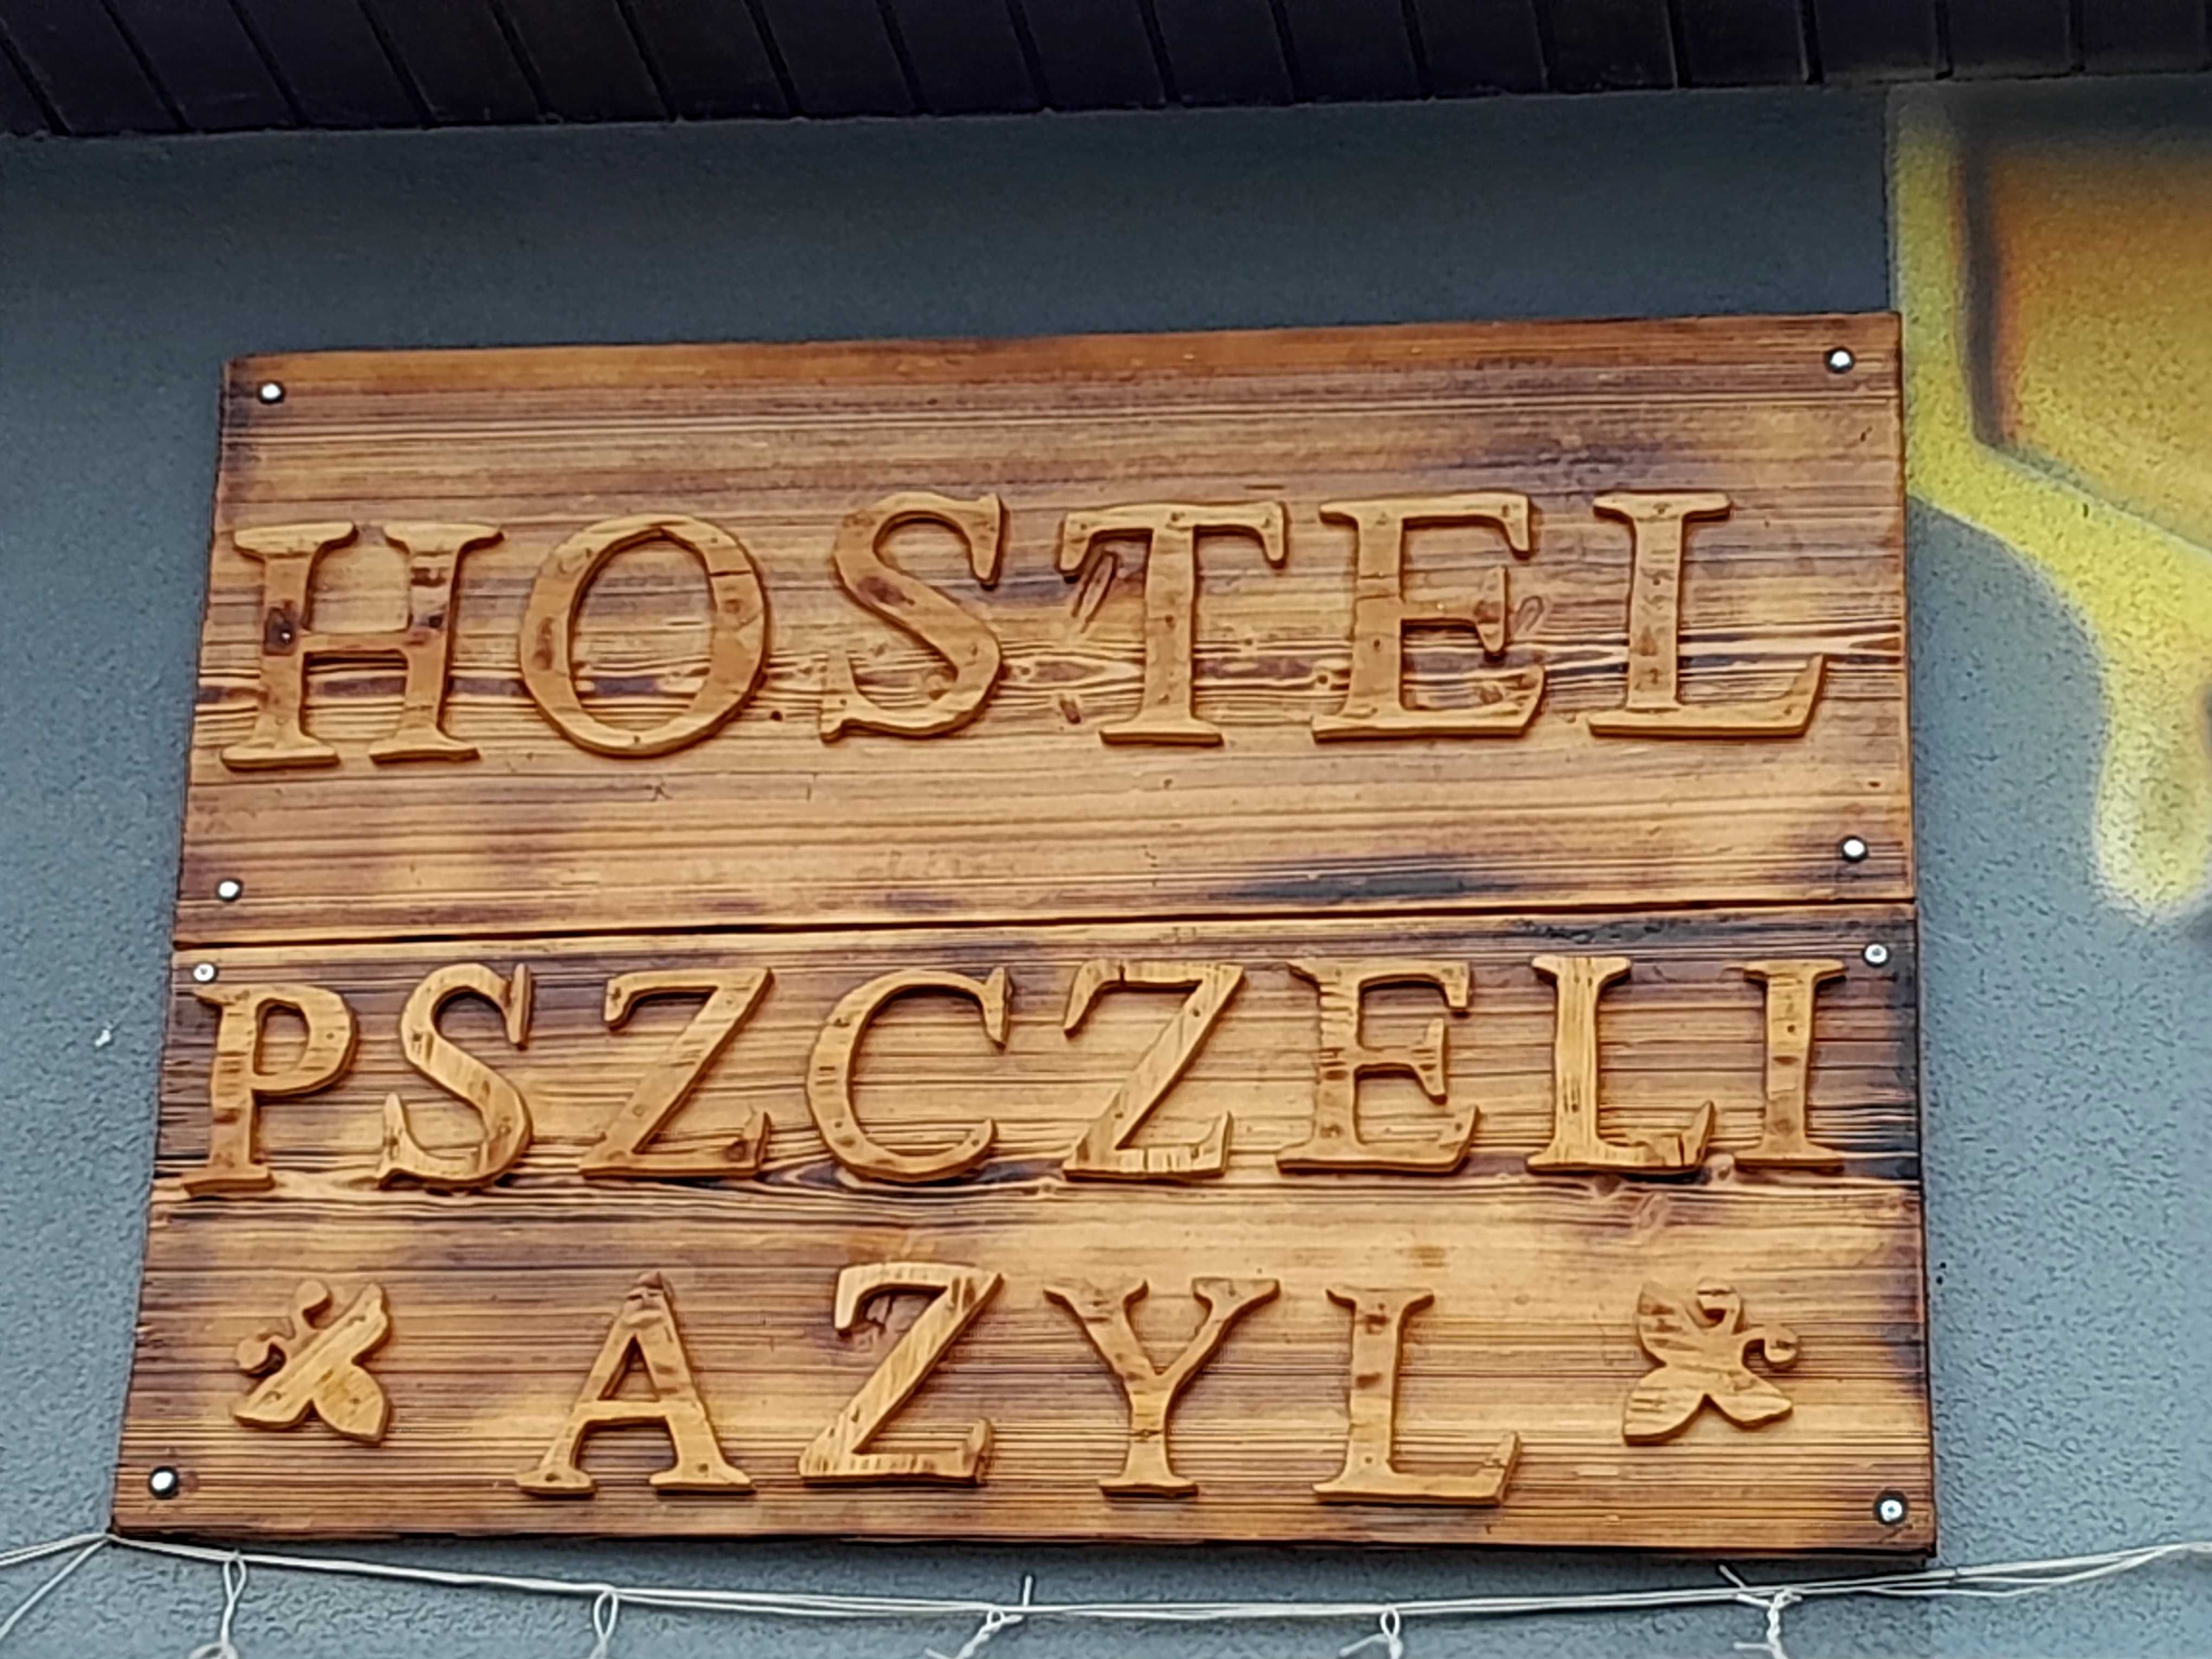 Noclegi ,kwatery , pokoje. /Hostel Pszczeli Azyl /